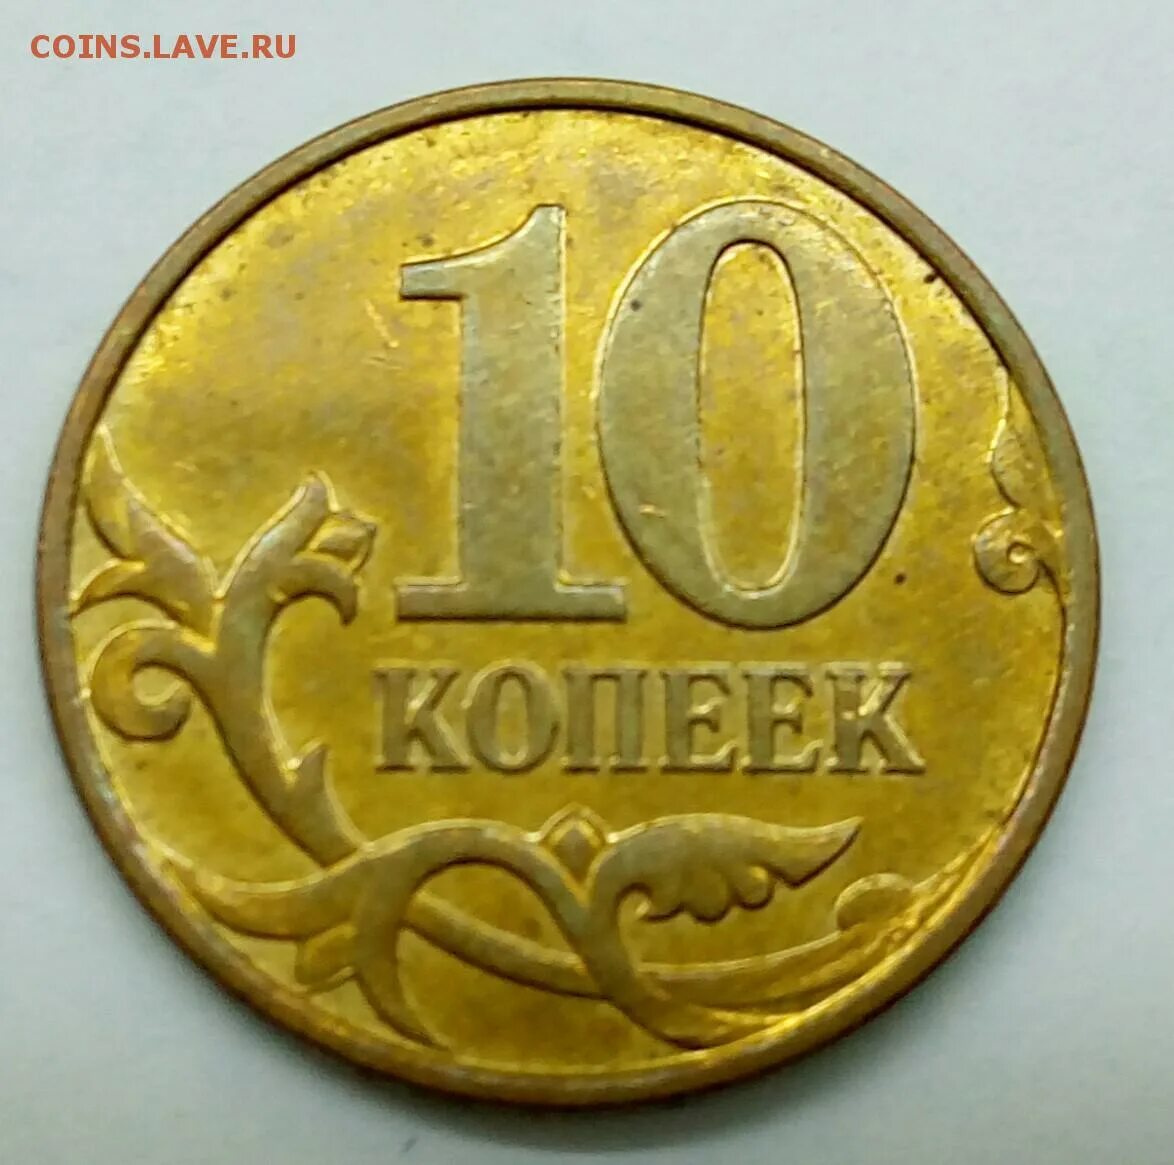 5 рублей 10 копеек. 10 Коп 2013г полный раскол. Копейки на 6 месяцев. 5 Копеек 2004 года полный обзор. 24 Рубля 6 копеек.